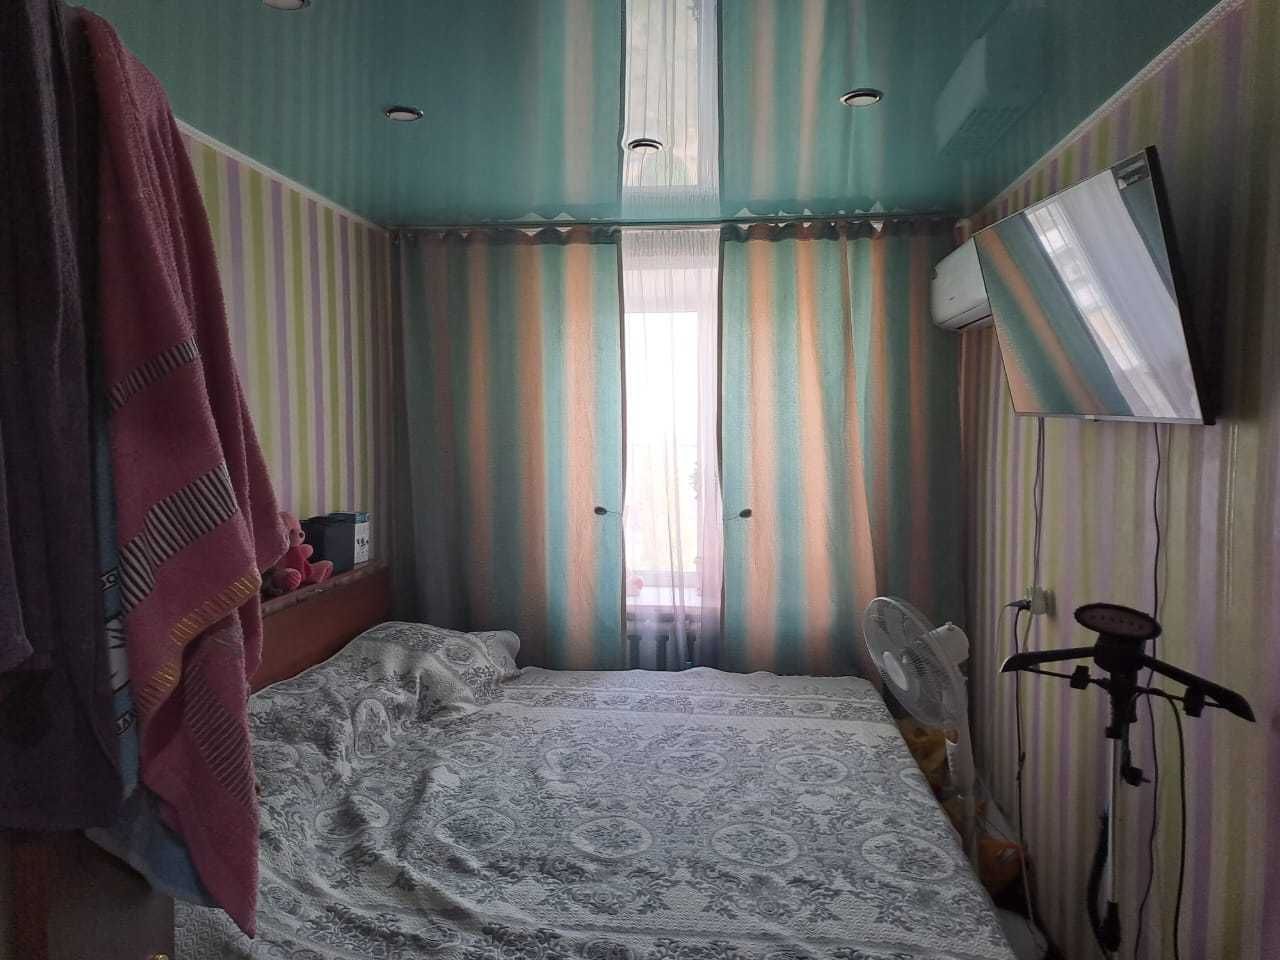 Обмен 2 комнатной квартиры на дом в городе Рудном